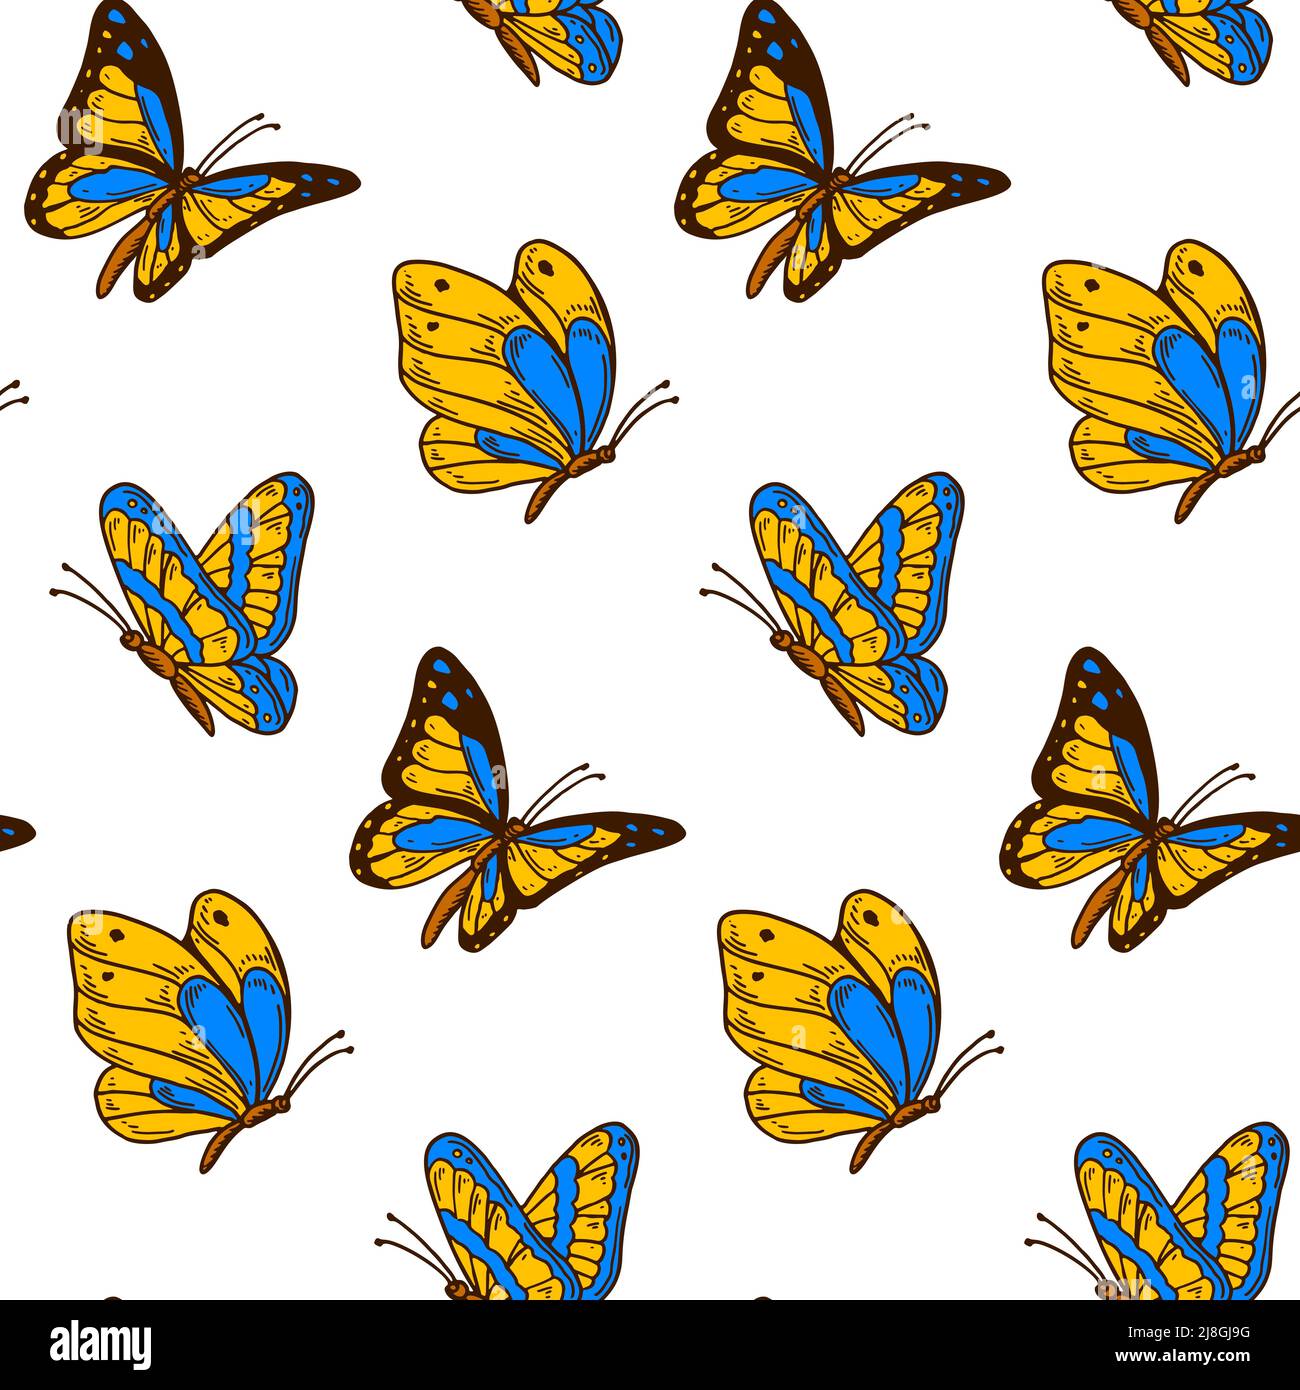 Diseño de mariposa sin costuras en colores de bandera azul y amarilla ucraniana. Destaca por su diseño en Ucrania. Ilustración vectorial dibujada a mano. Ilustración del Vector